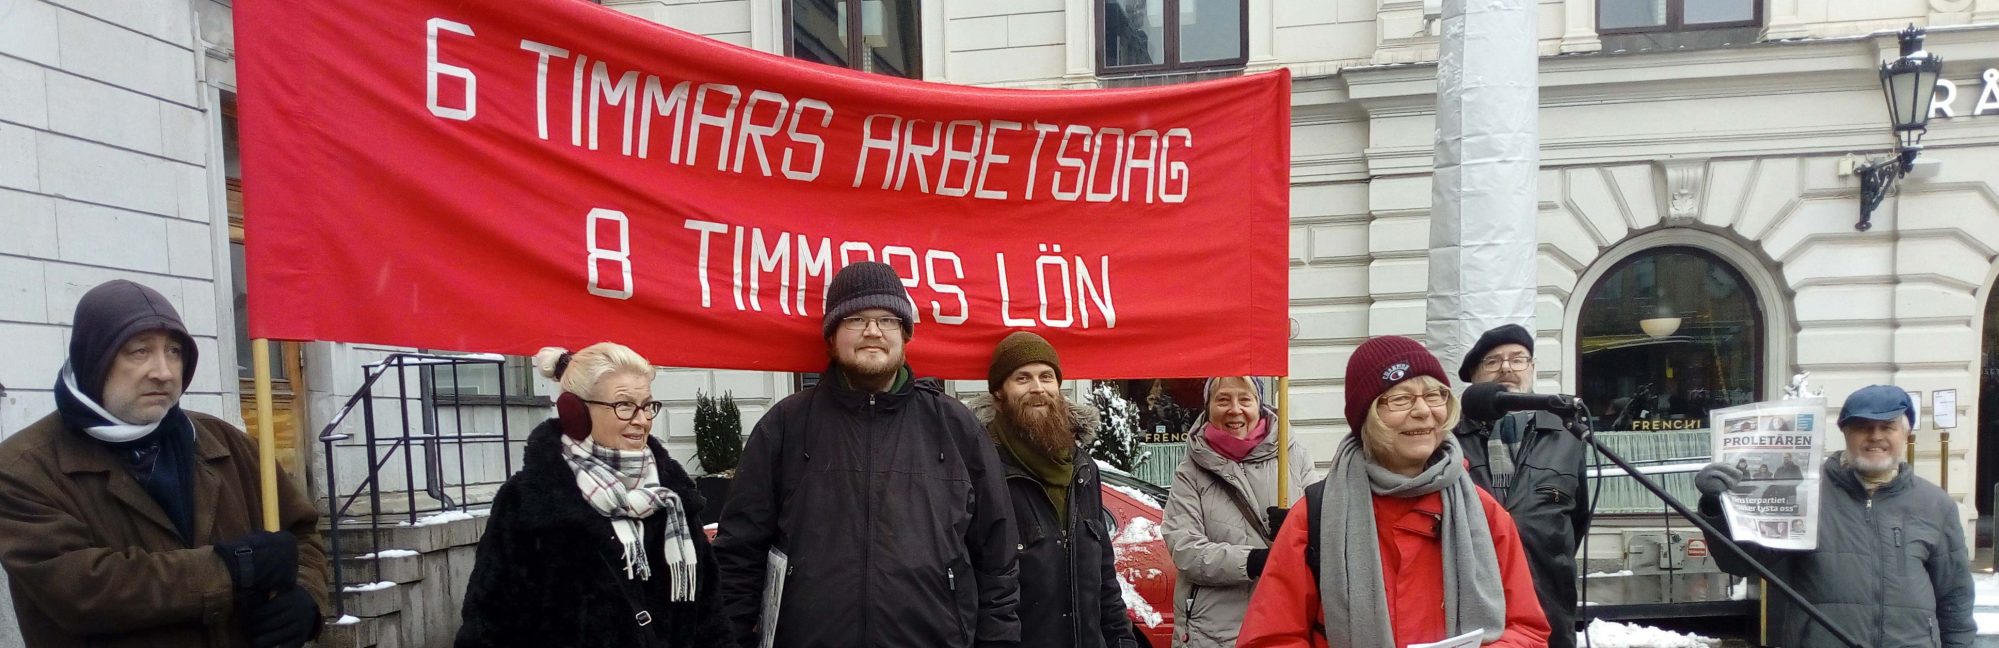 Kommunistiska Partiet Uppsala